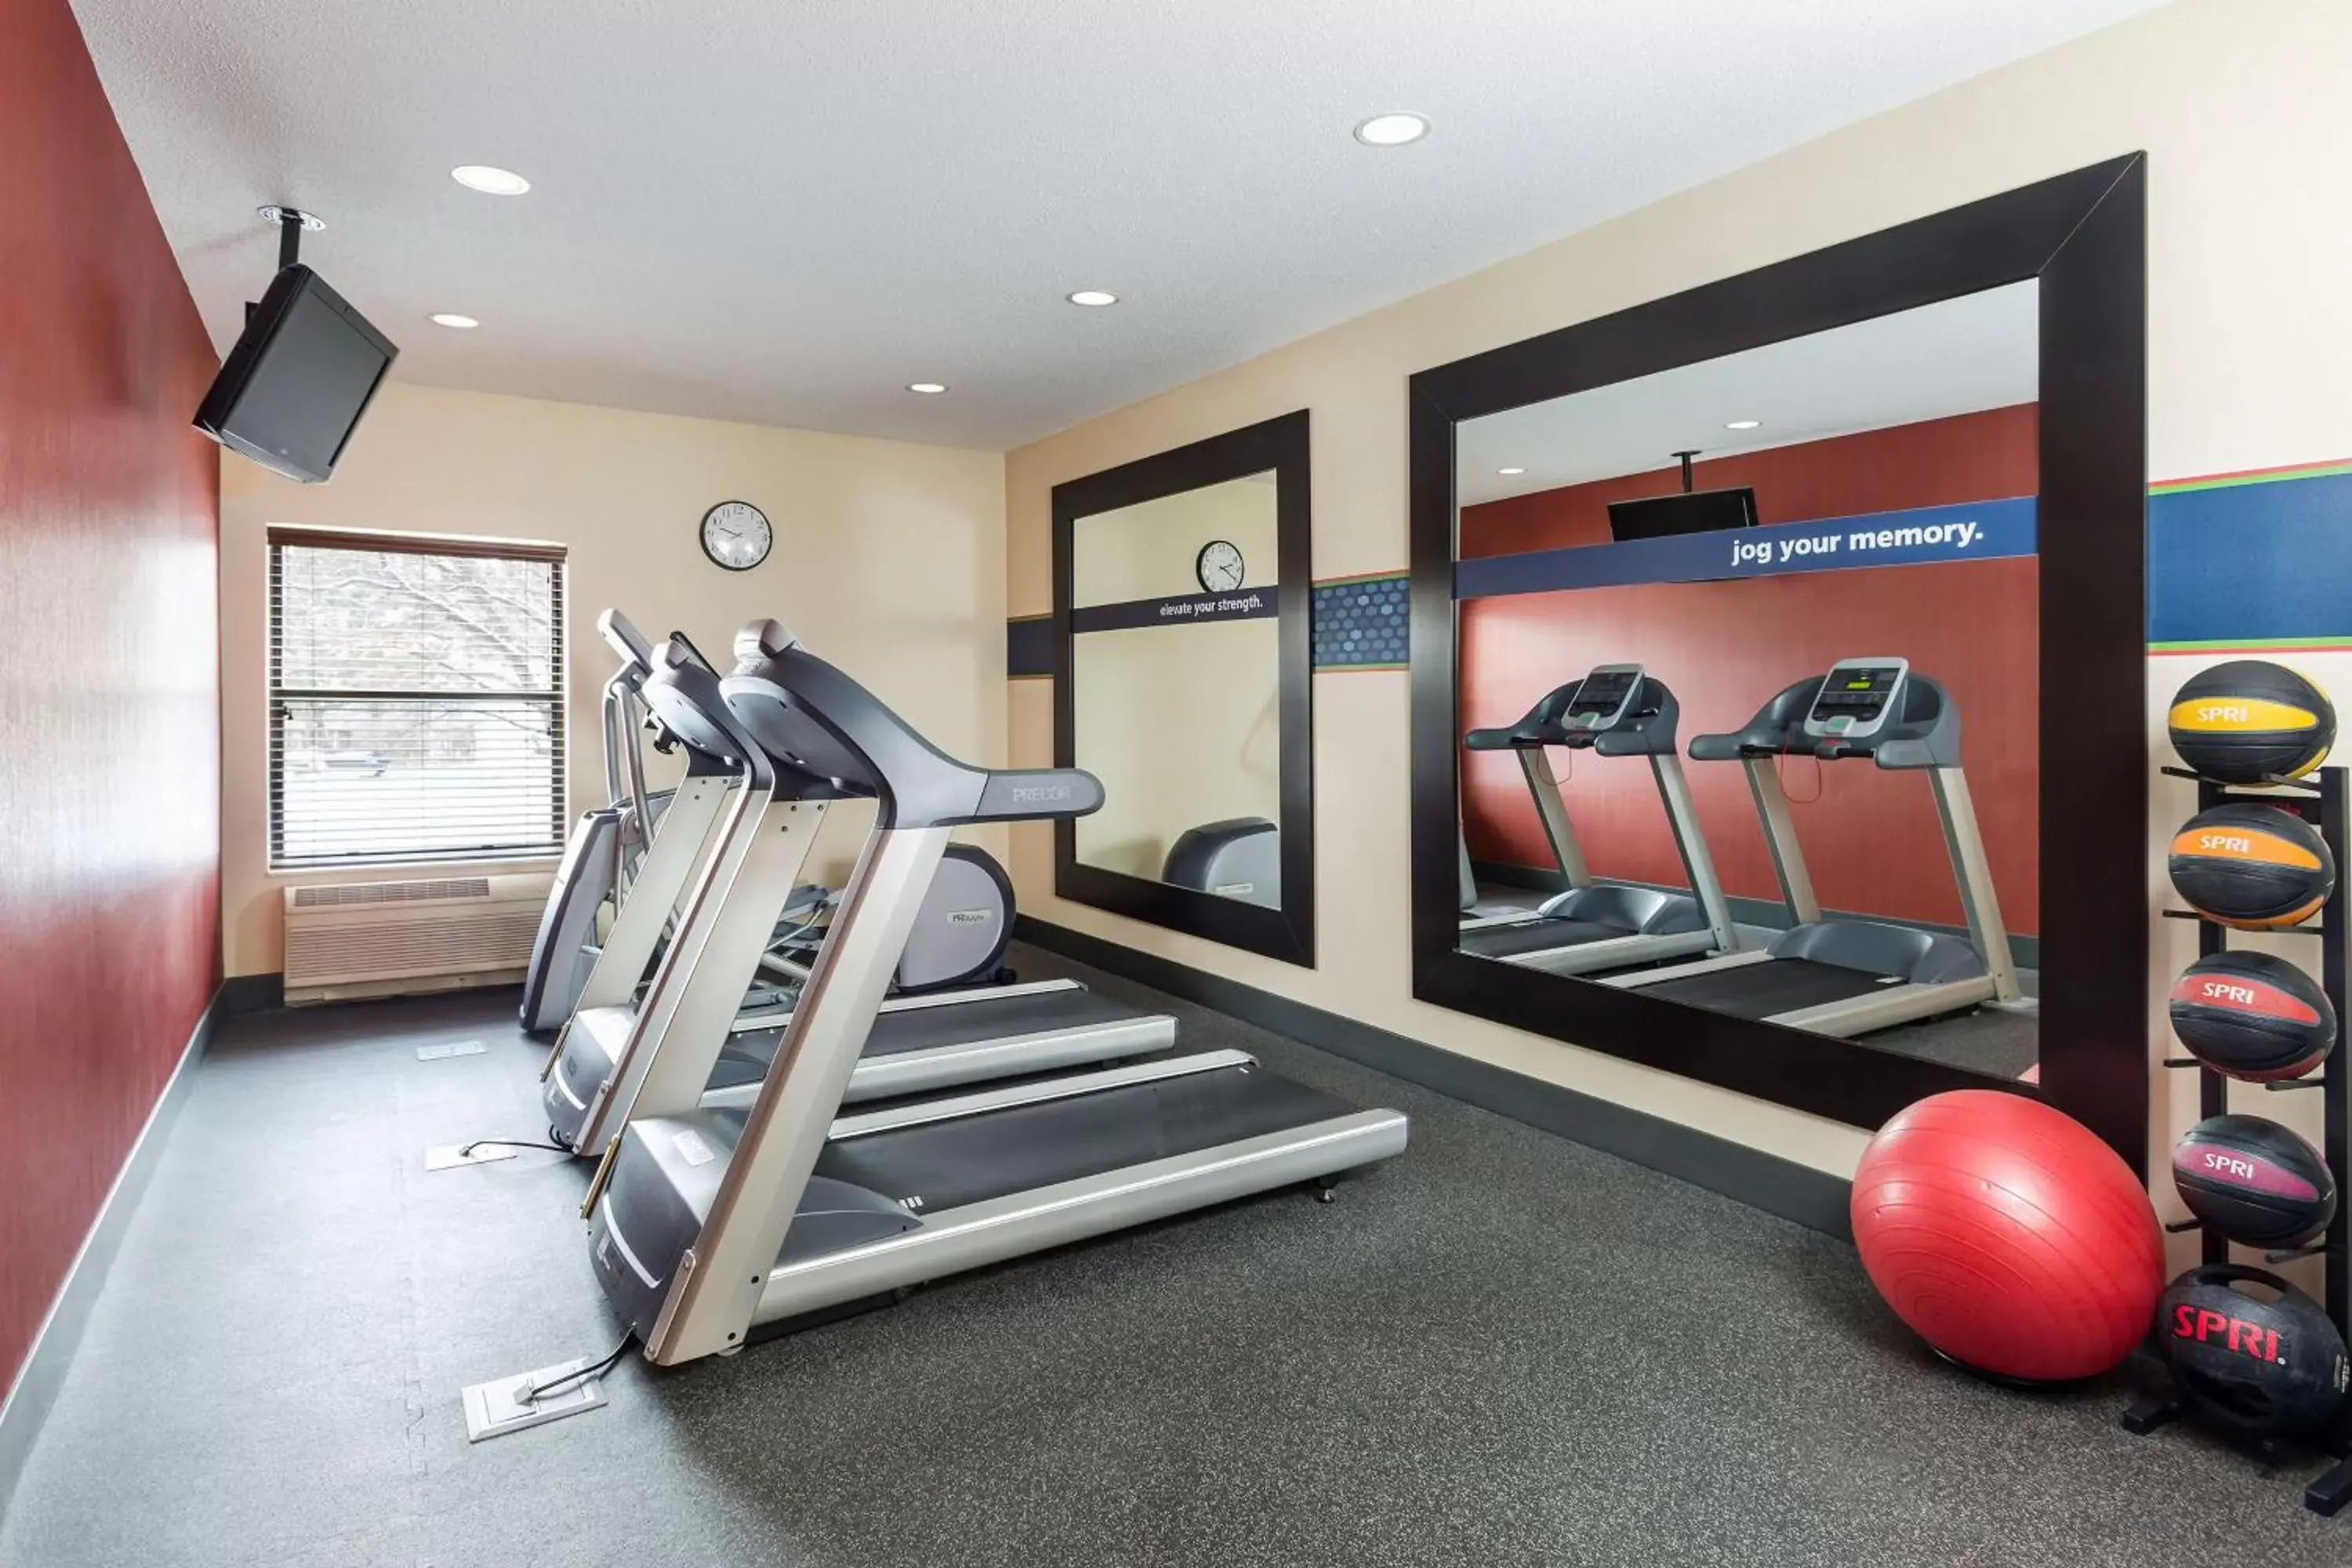 Fitness centre/facilities, Fitness Center/Facilities in Hampton Inn Minneapolis-Burnsville